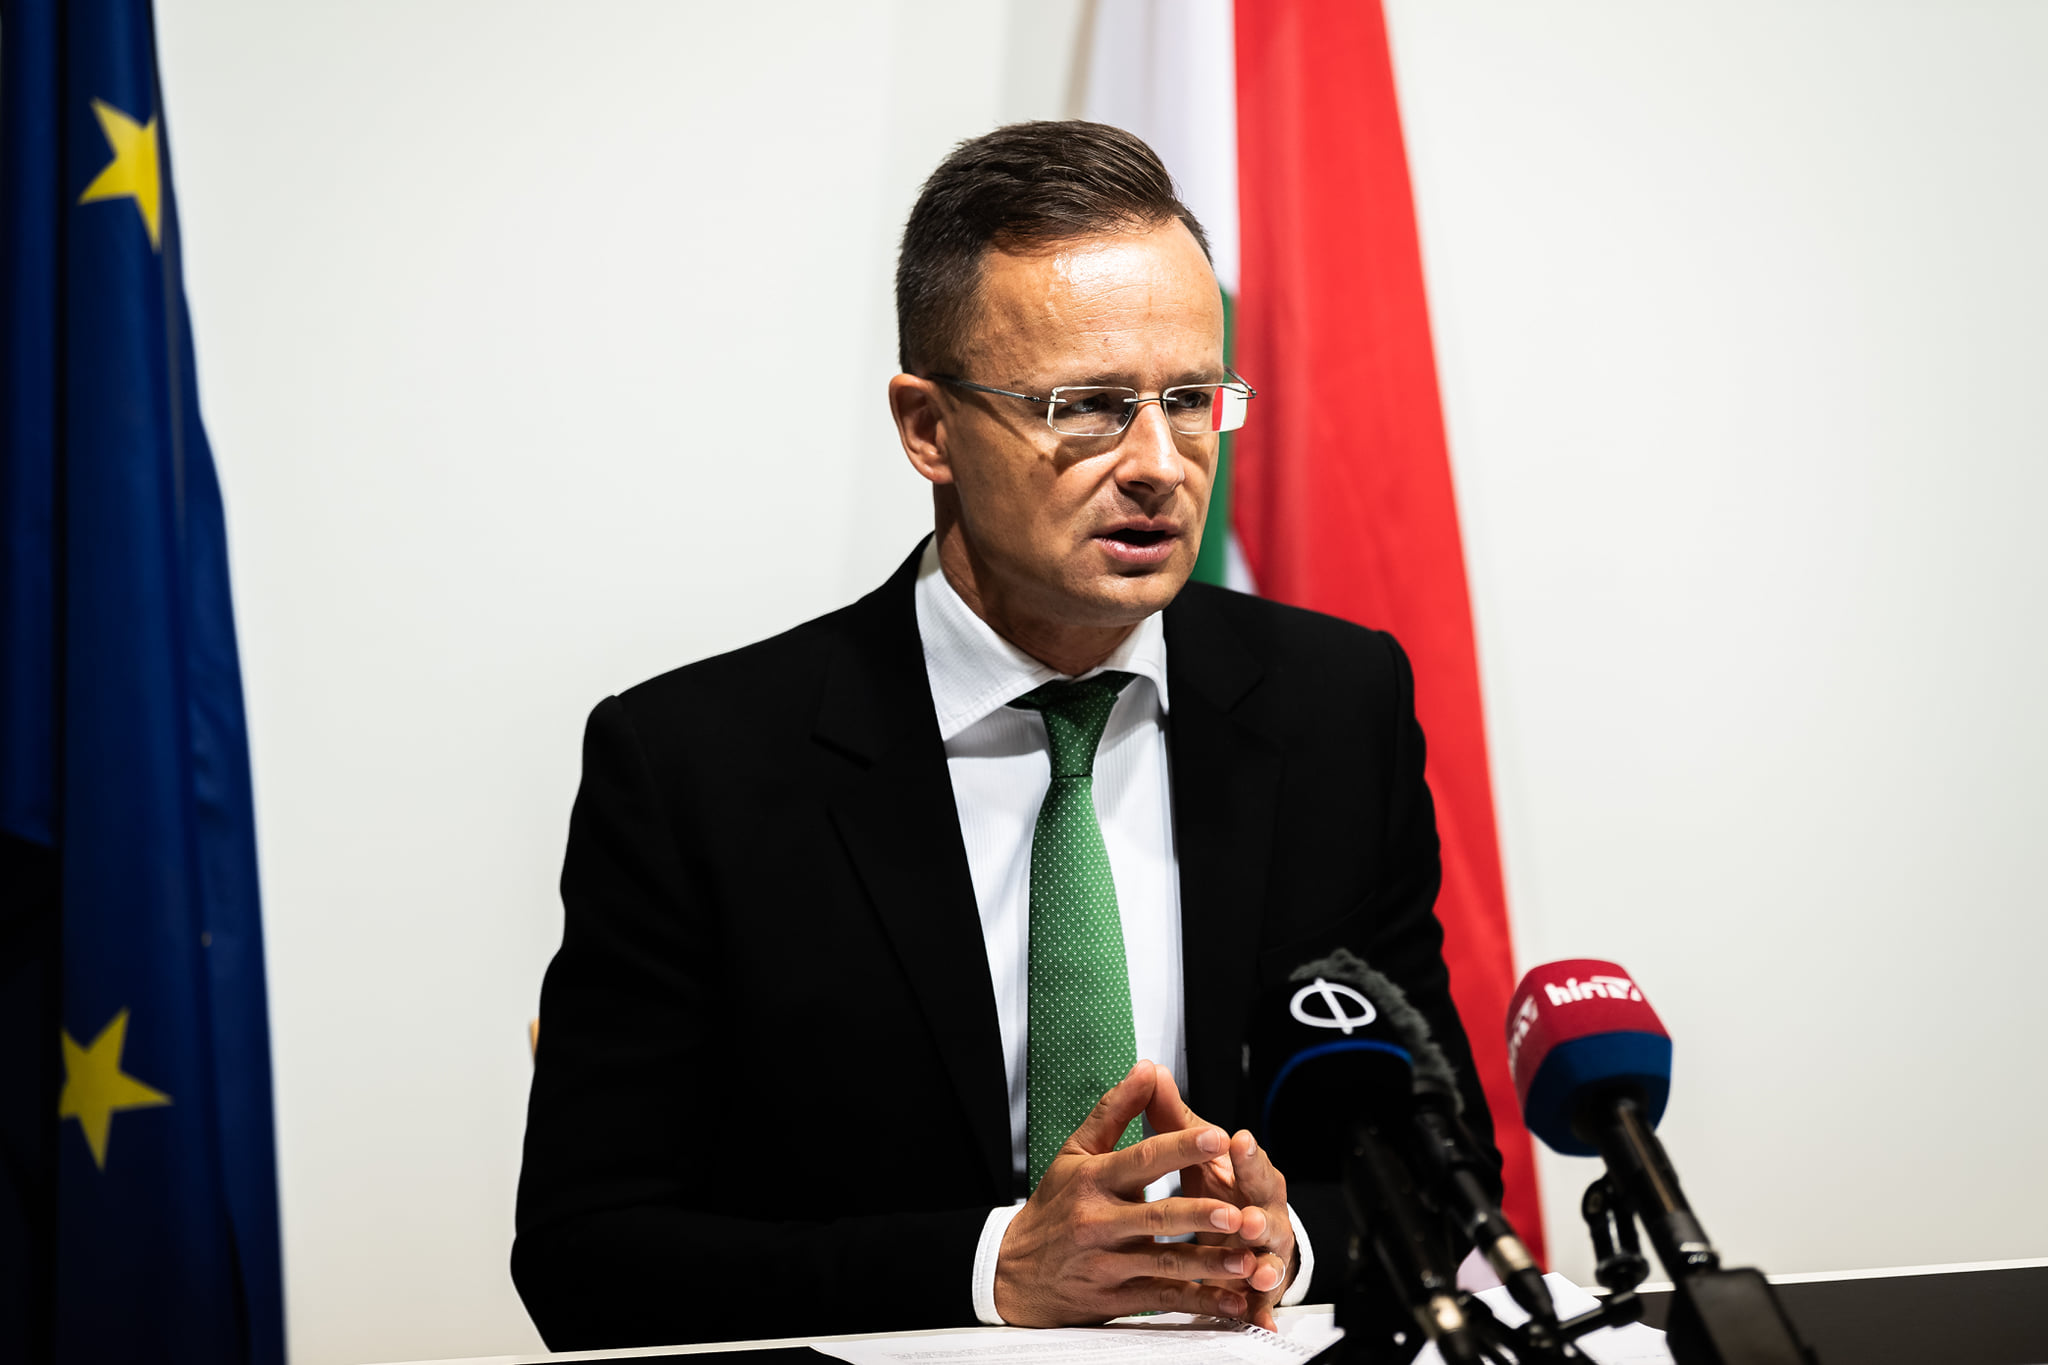 Péter Szijjártó Ministre des Affaires étrangères